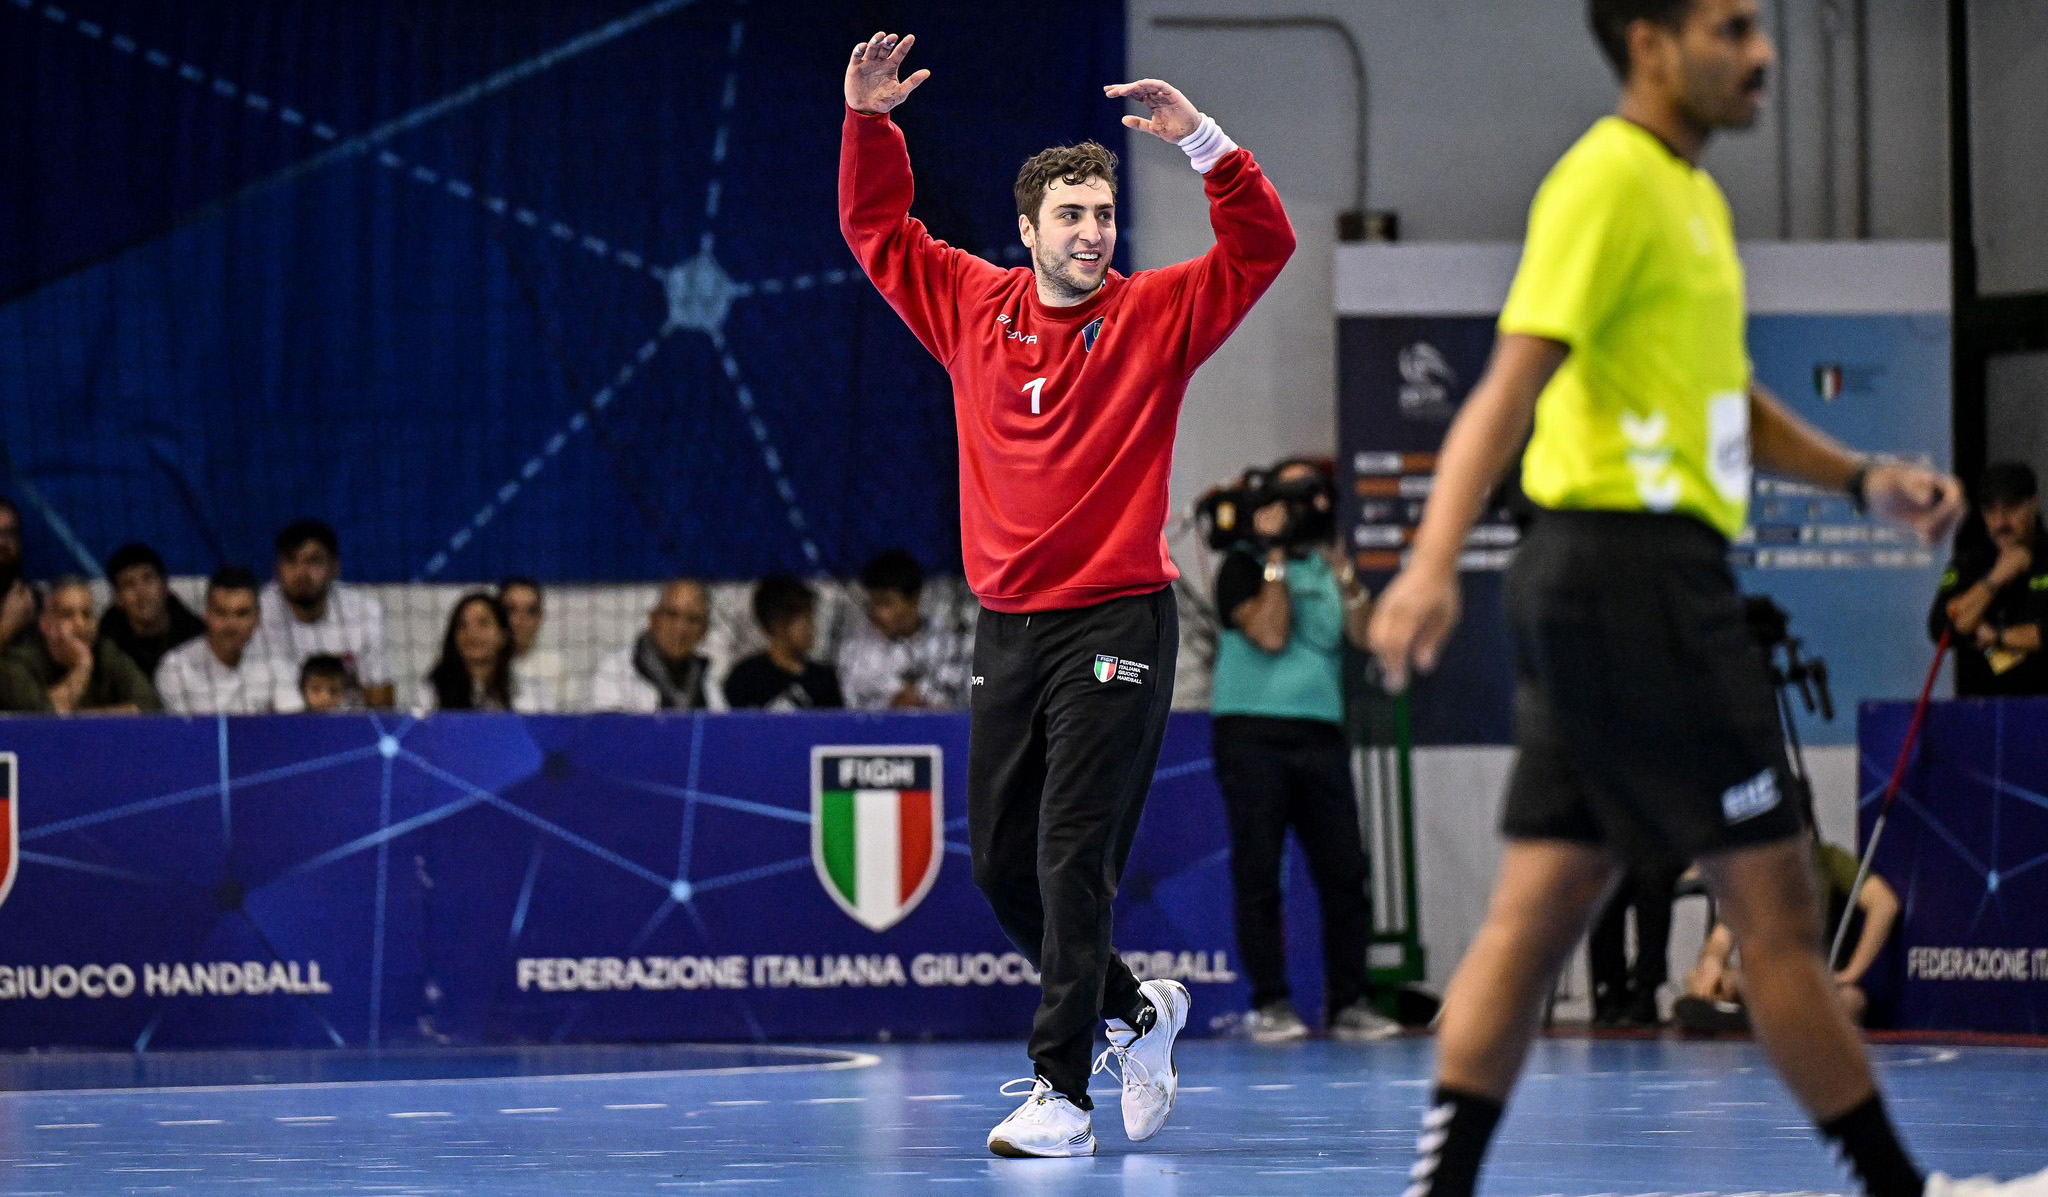 Foto: Luigi Canu/ Federazione Italiana Giuoco Handball